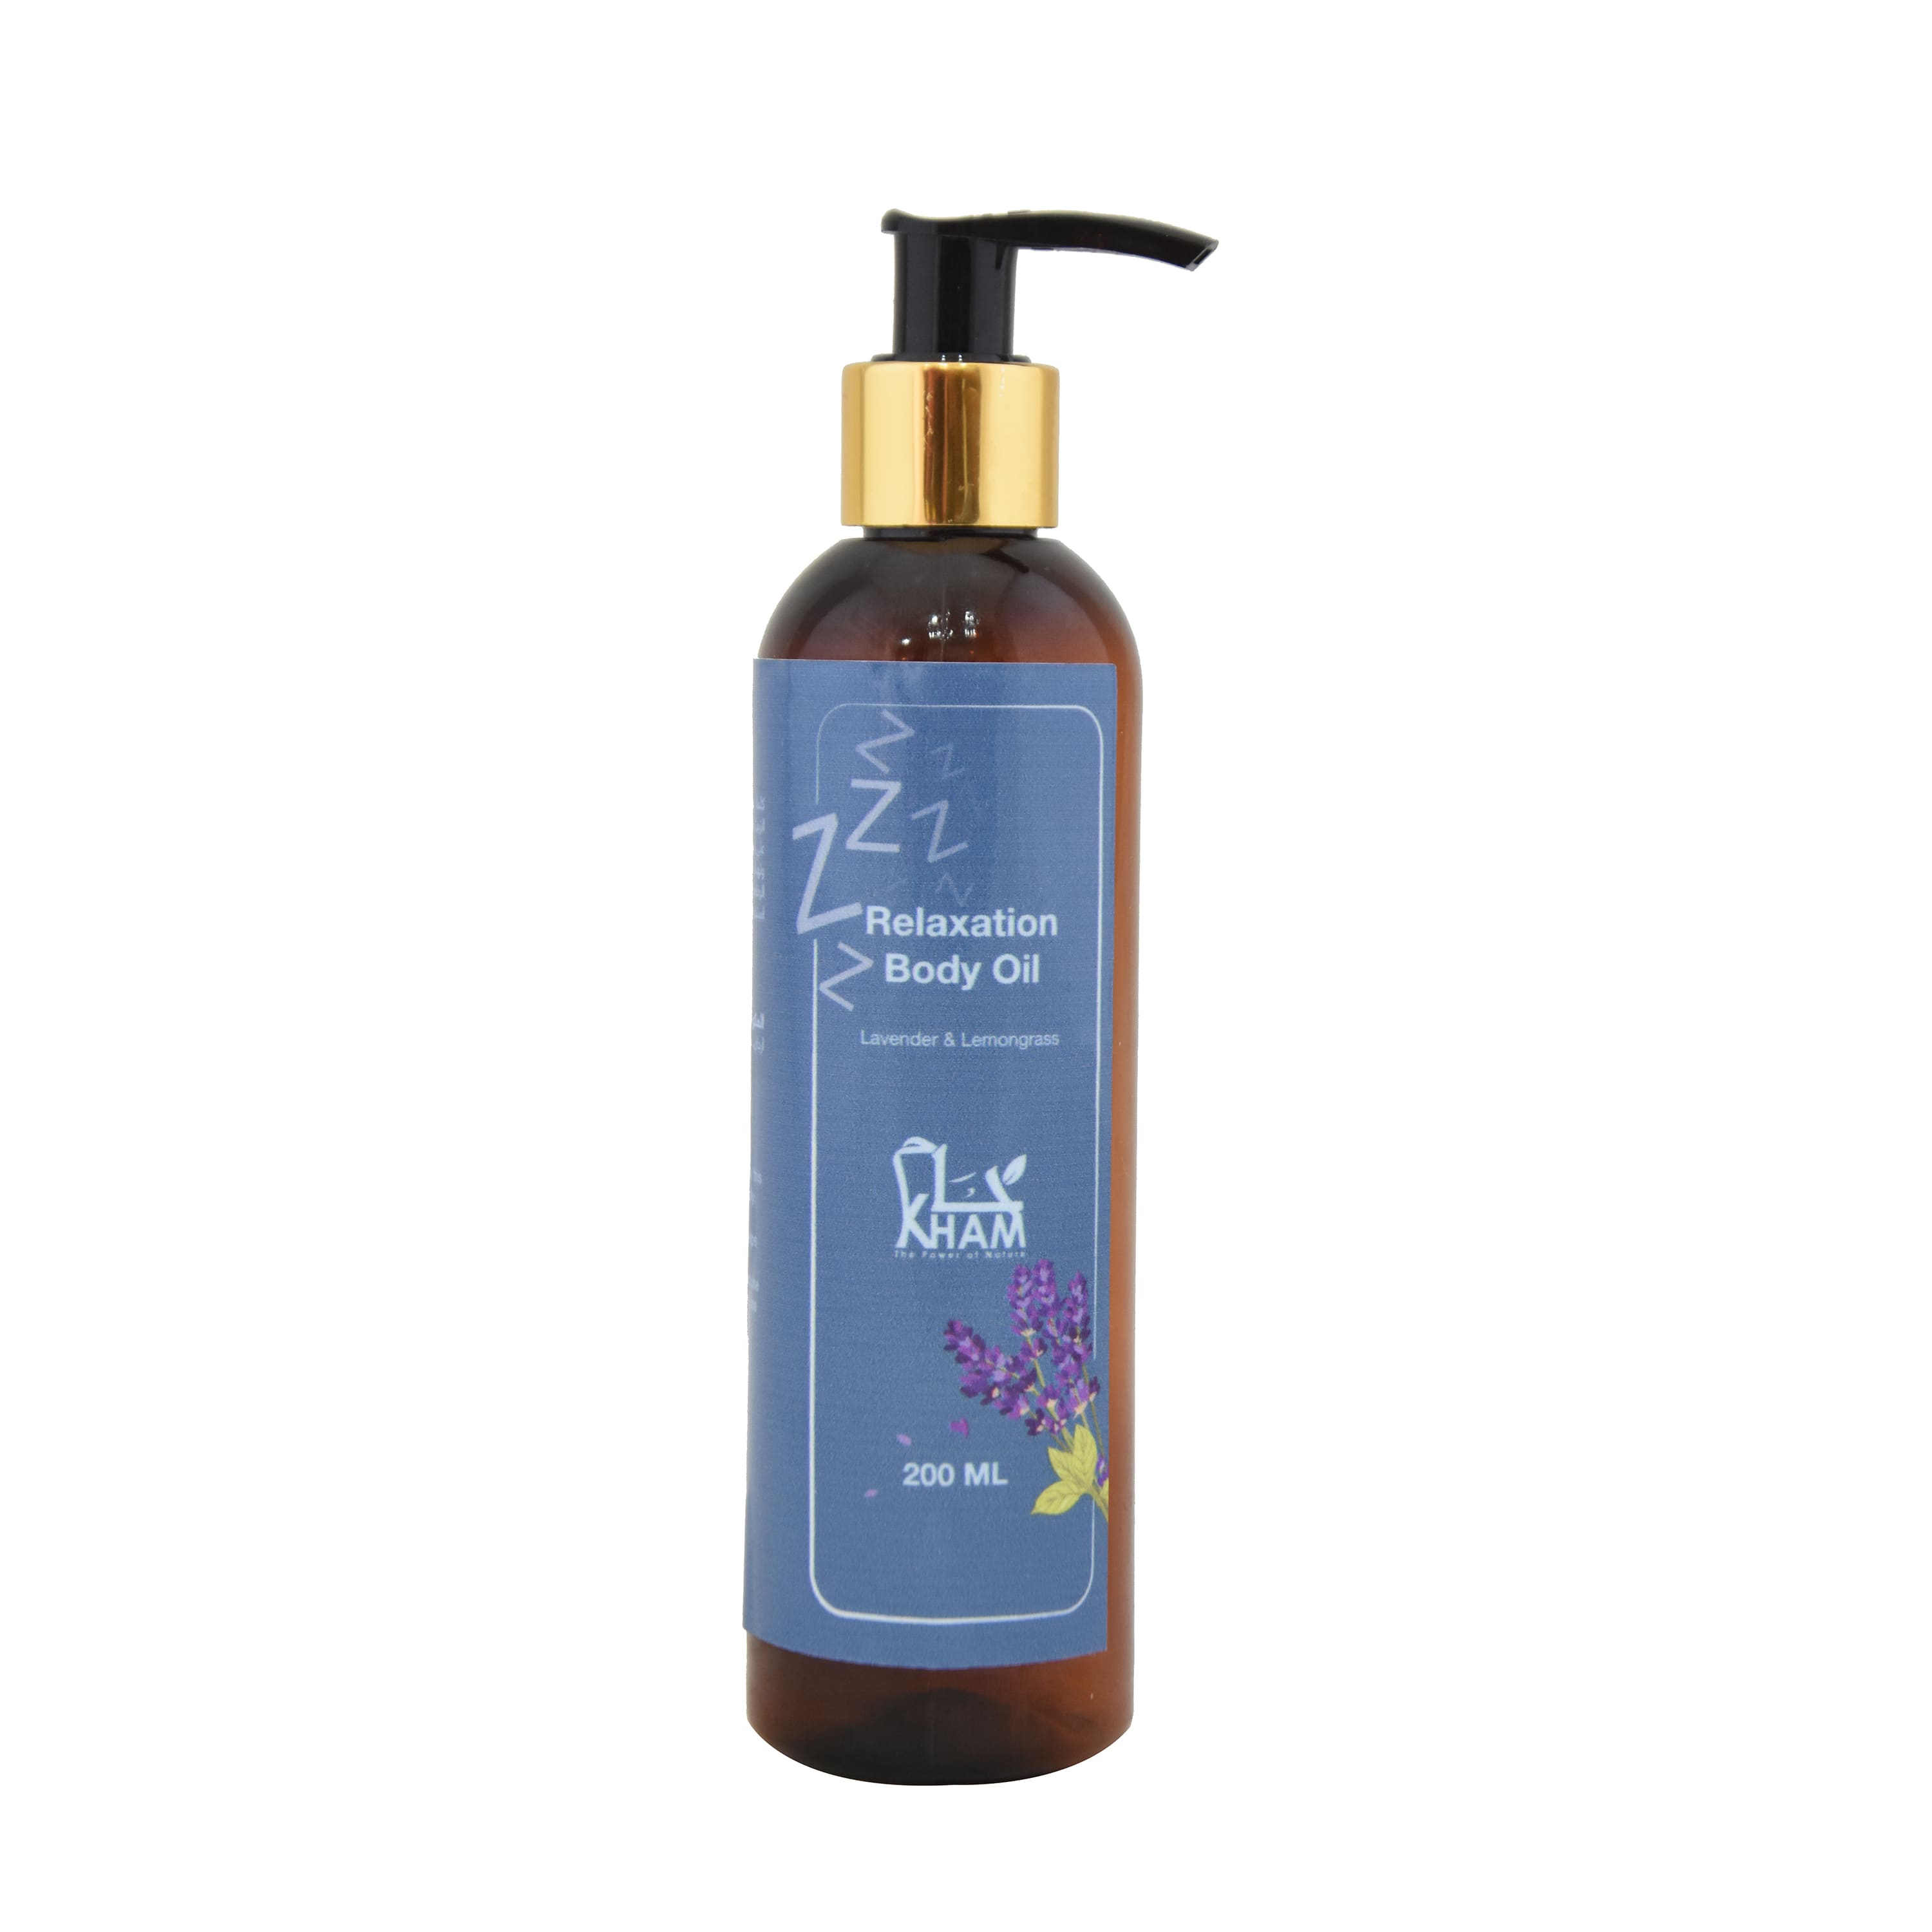 Kham Relaxation Body Oil (200 ml) Lavender & Lemongrass